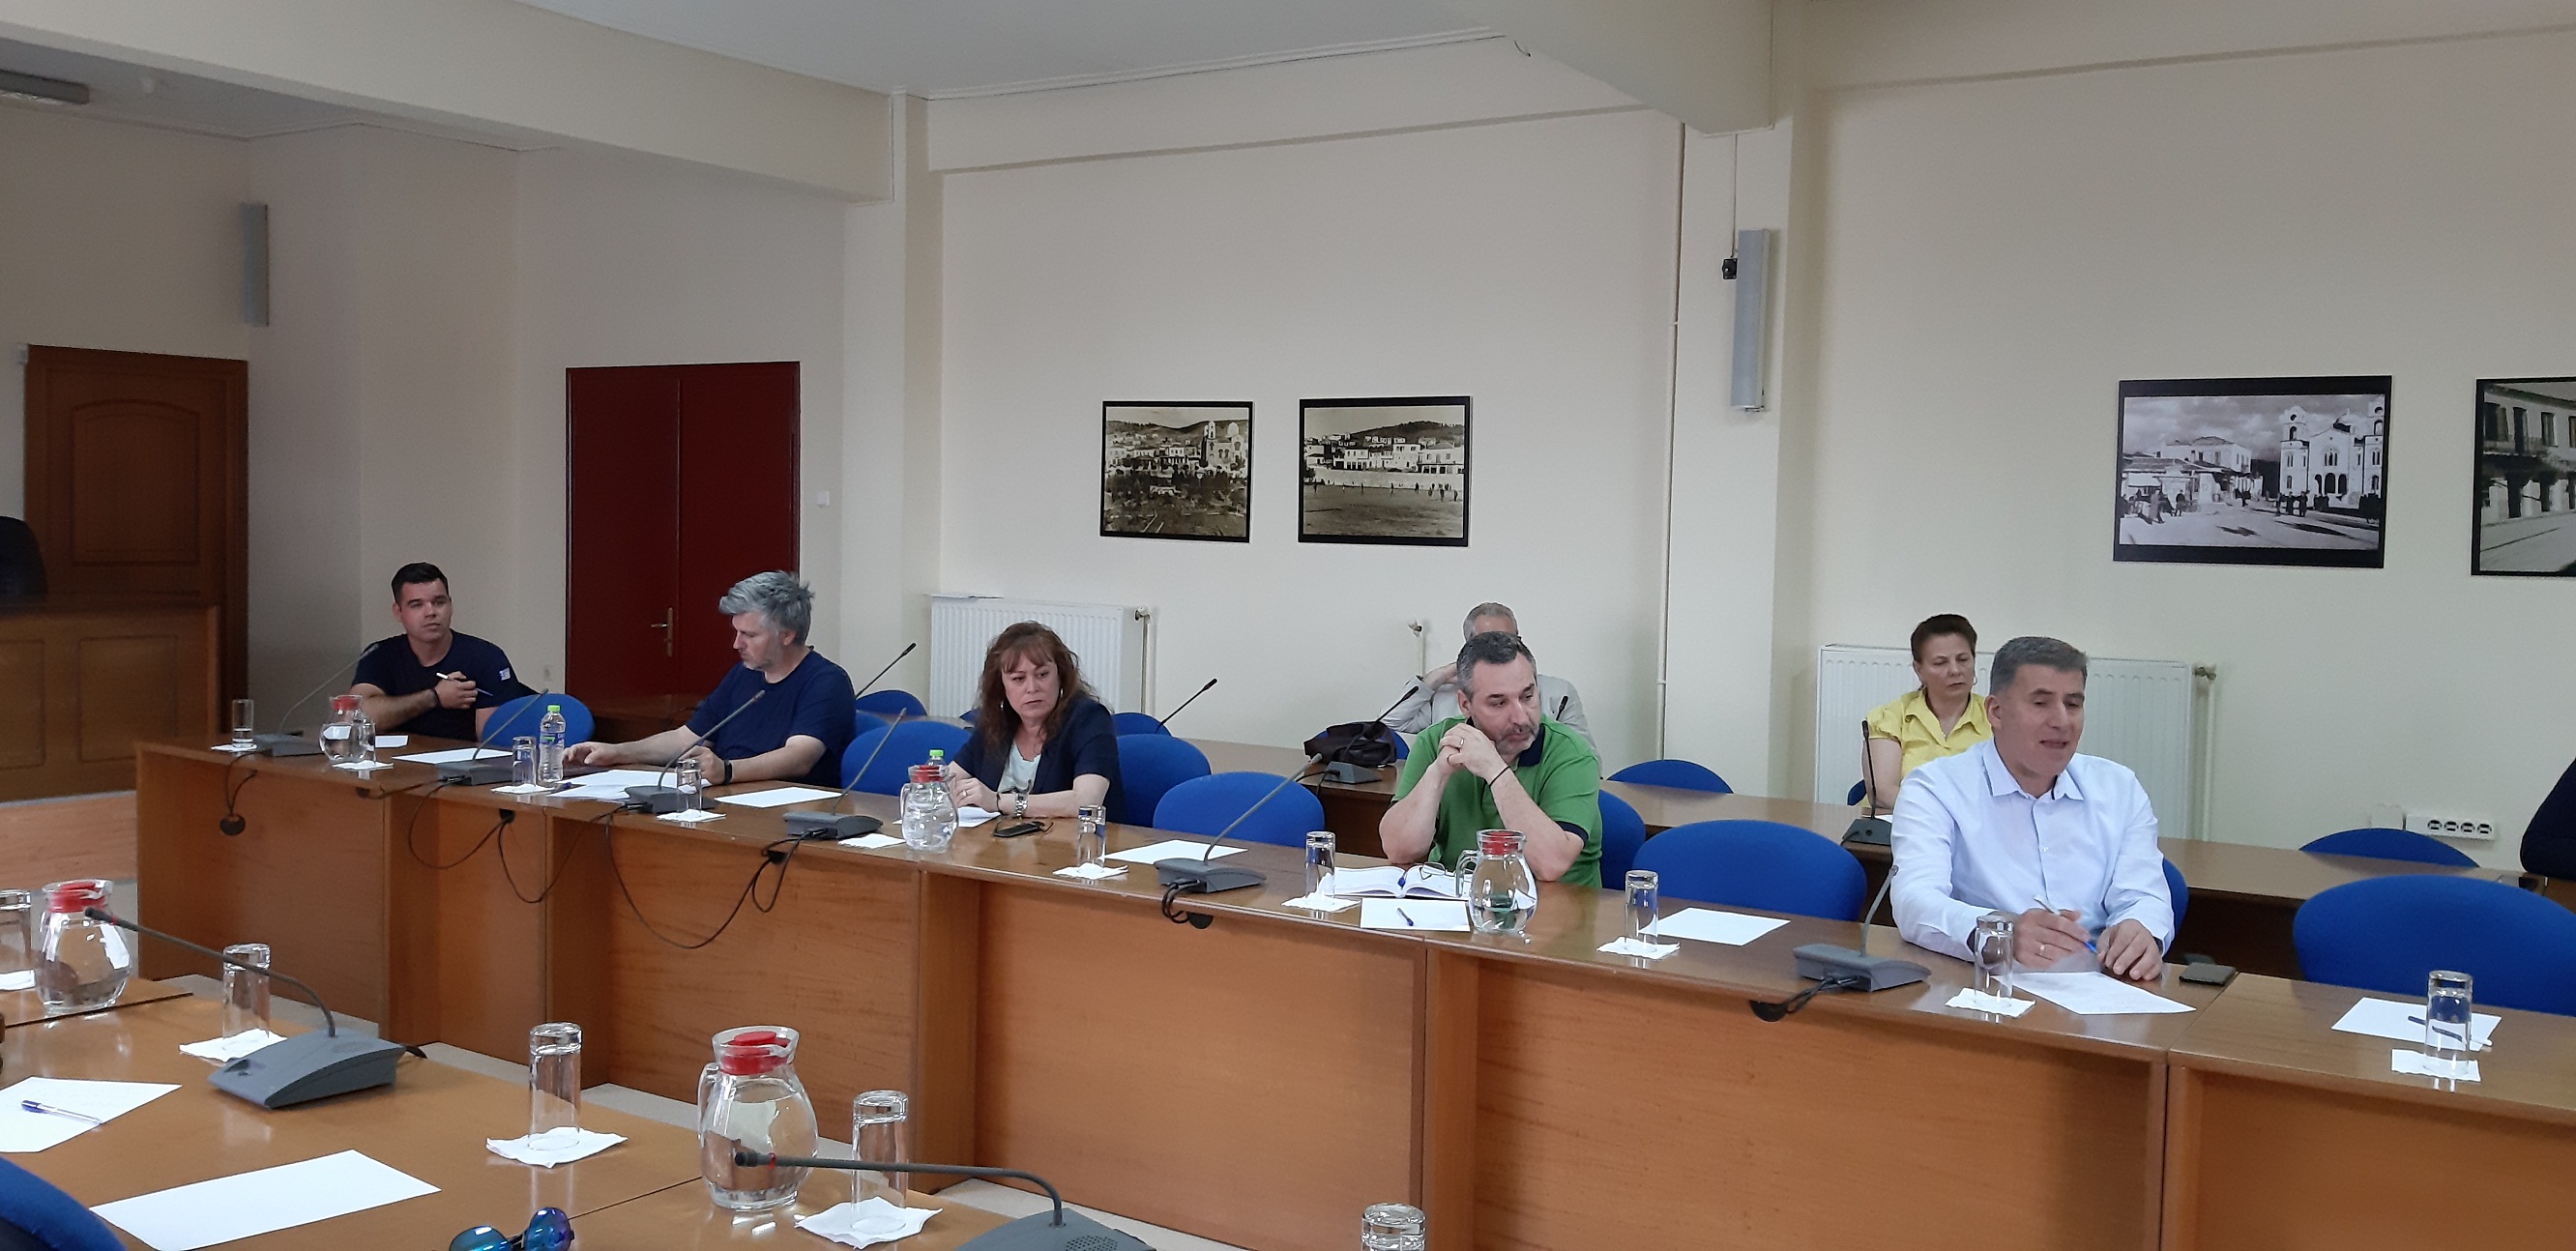 Δήμος Ελασσόνας: Πρωτοβουλία ευαισθητοποίησης για το περιβάλλον